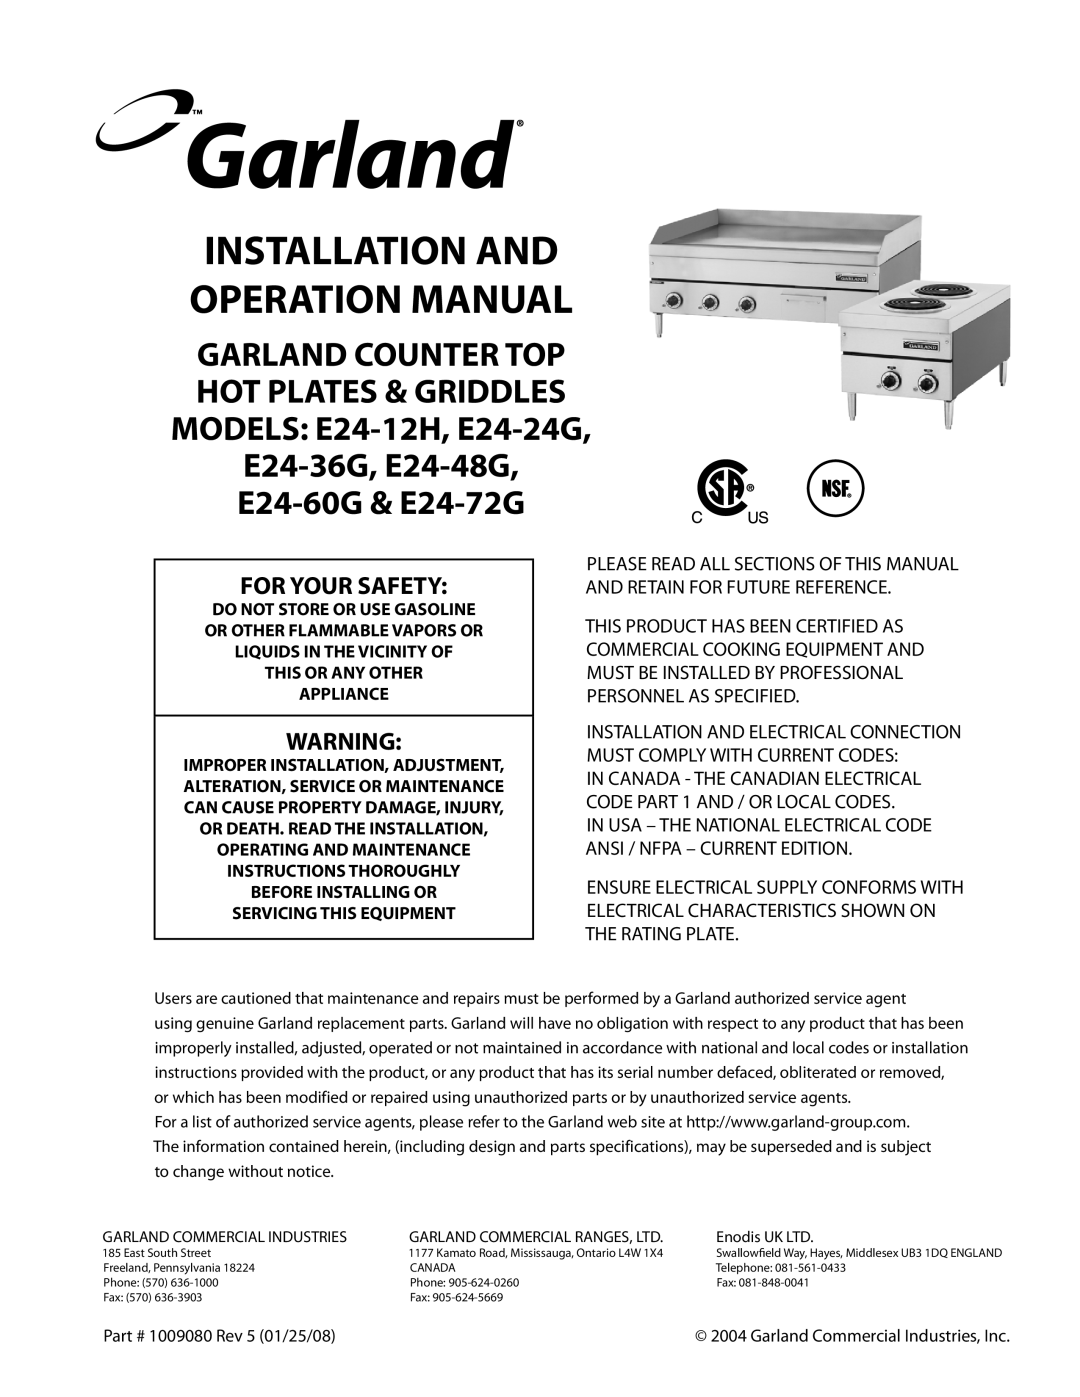 Garland E24-48G, E24-36G, E24-24G, E24-12H operation manual For Your Safety, E24-60G & E24-72G 